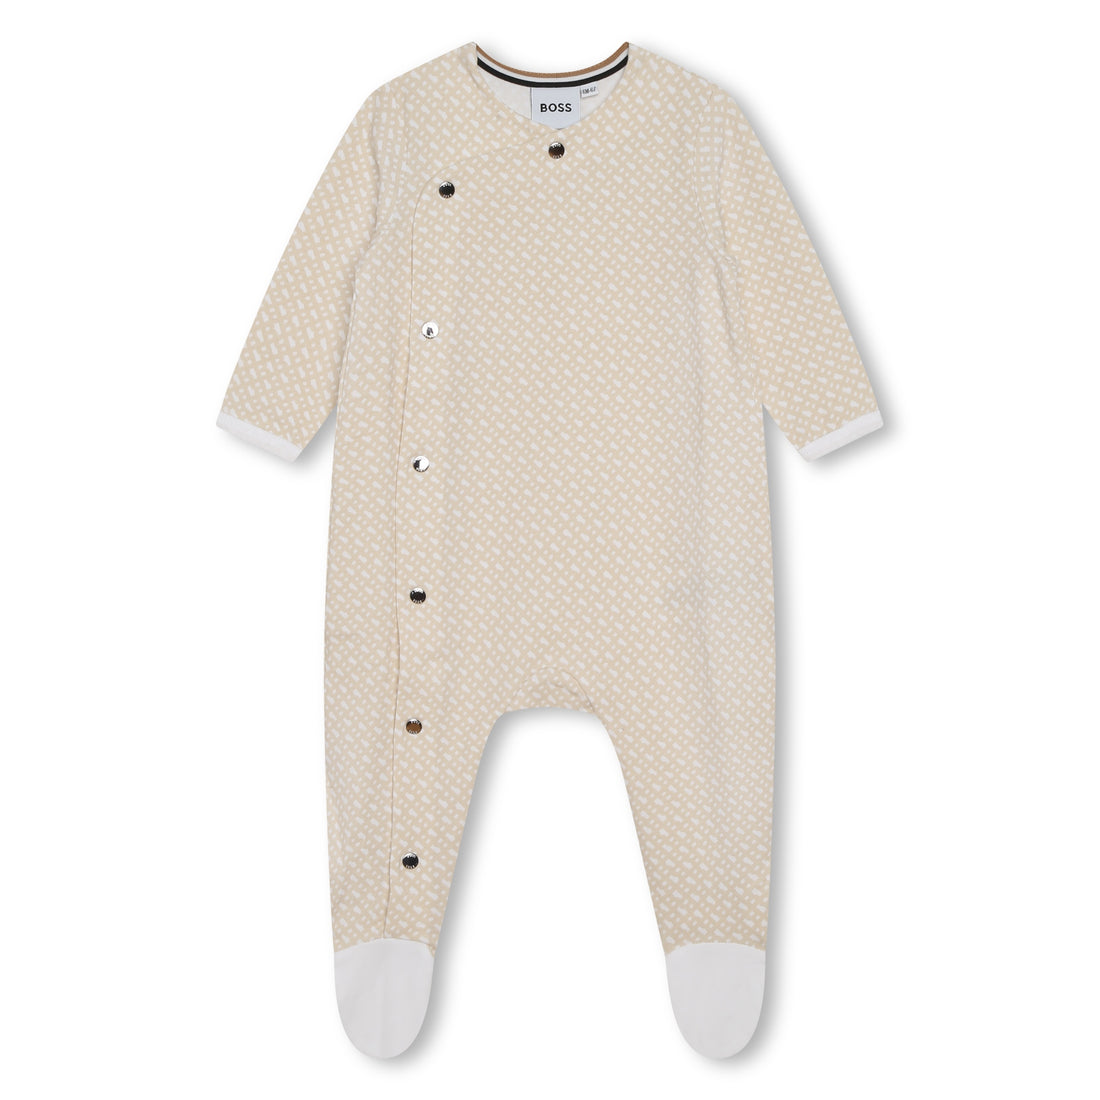 Hugo Boss Set Pyjamas + Pull On Hat Style: J98417